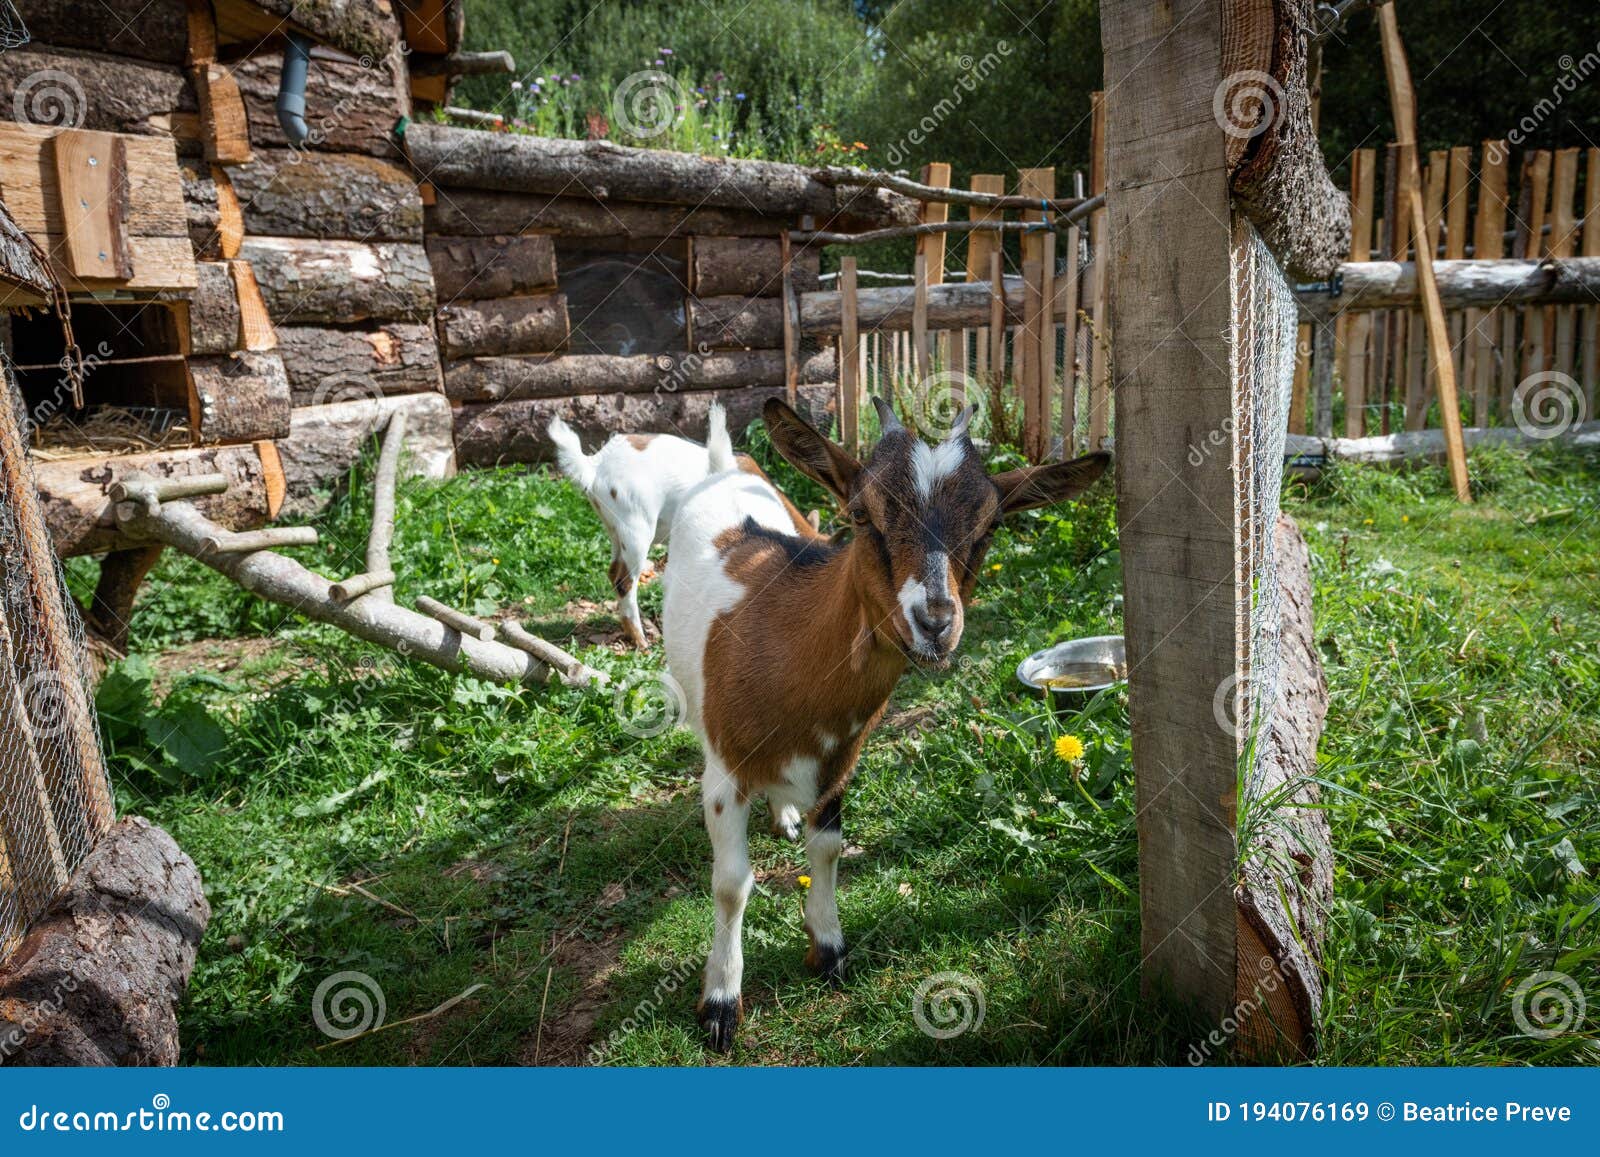 cutty dwarf goat with funny attitudes